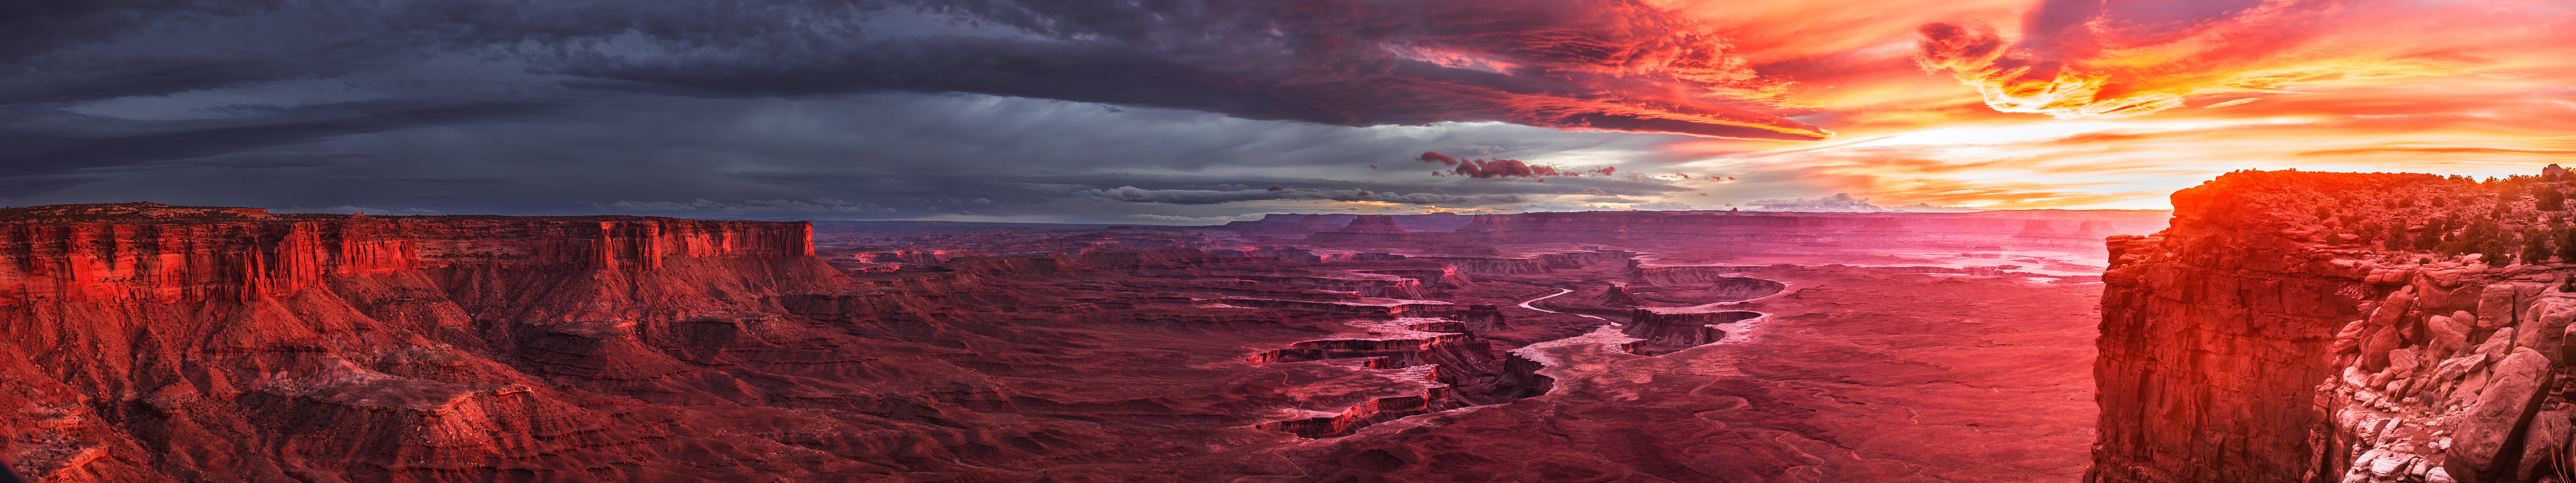 Canyonlands National Park Sunset - HD Wallpaper 